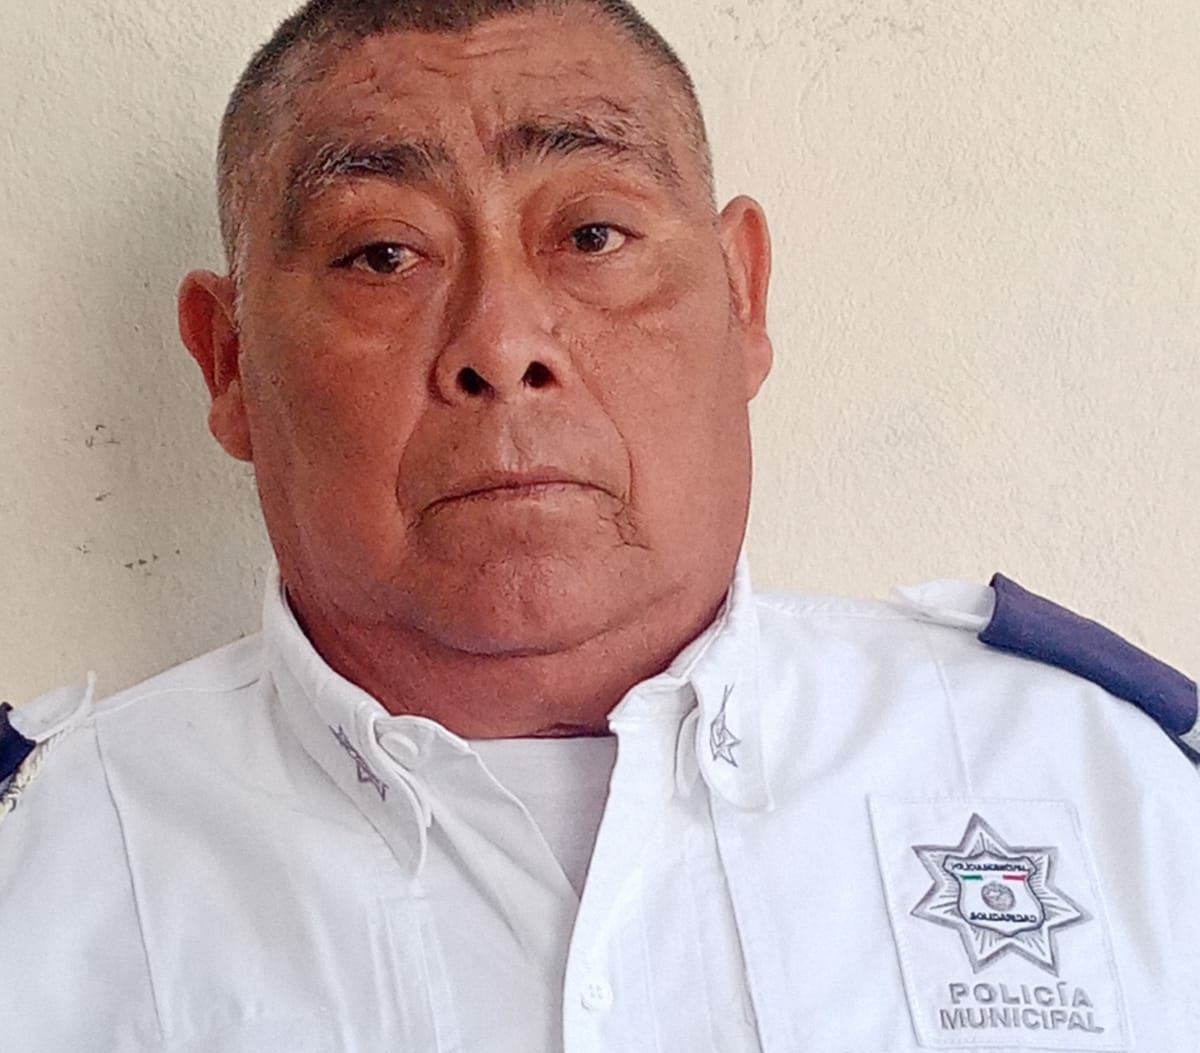 Oficial de Tránsito Eusebio Balan Moo "El Mono" 